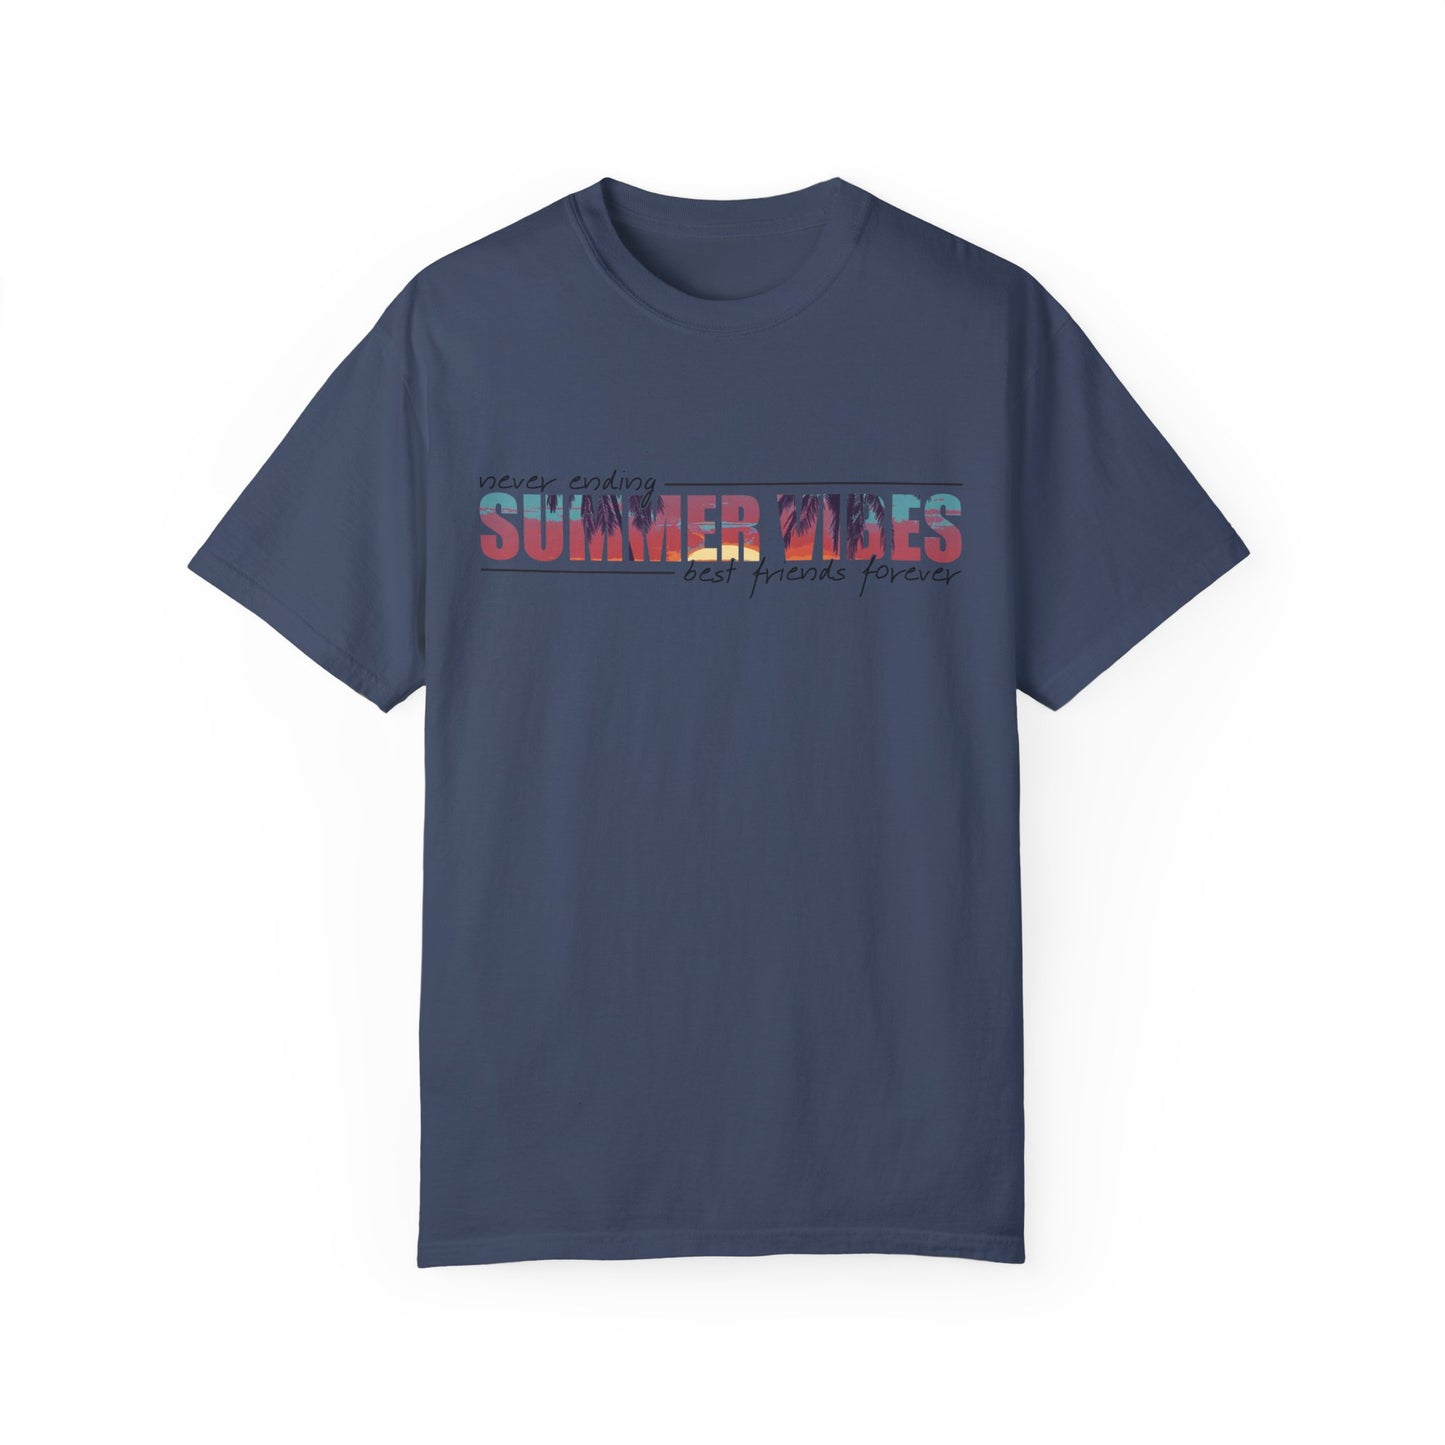 Never Ending Summer Vibes Shirt, Summer Shirt, Best Friends Forever Shirt, Vacation T-Shirt, Beach T Shirt, Summer Mom Shirt, Holiday Shirt